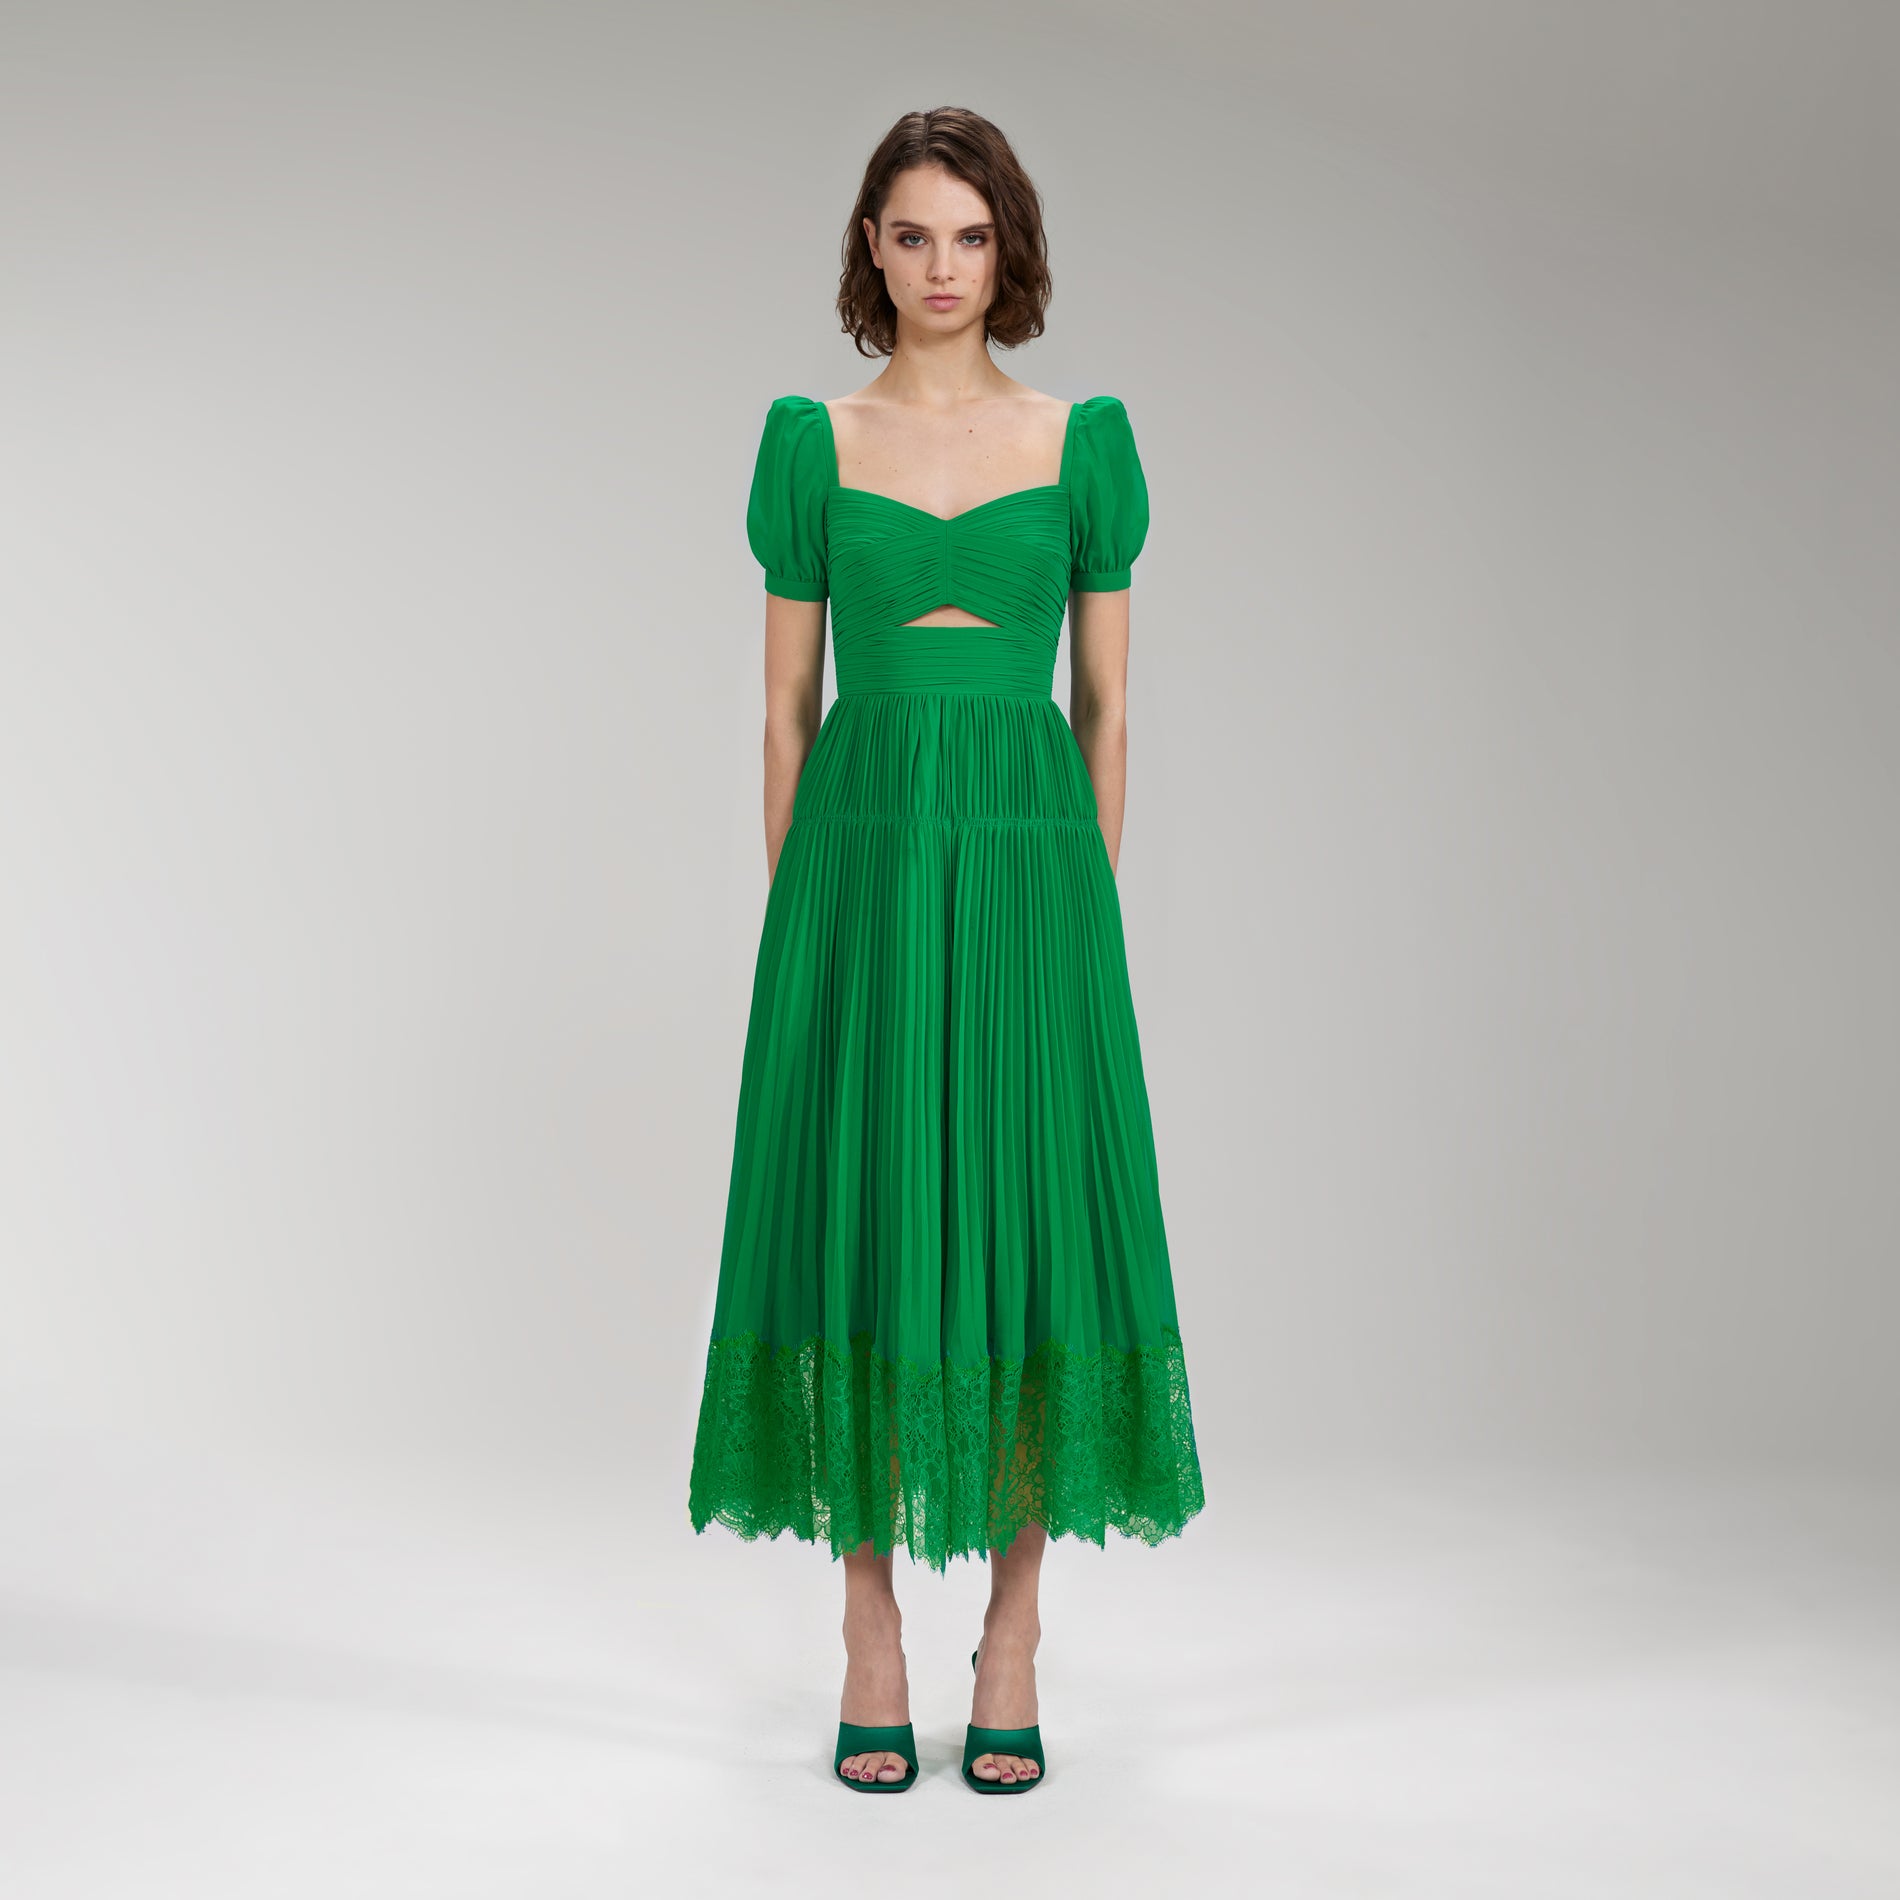 A woman wearing the Bright Green Chiffon Cut Out Midi Dress